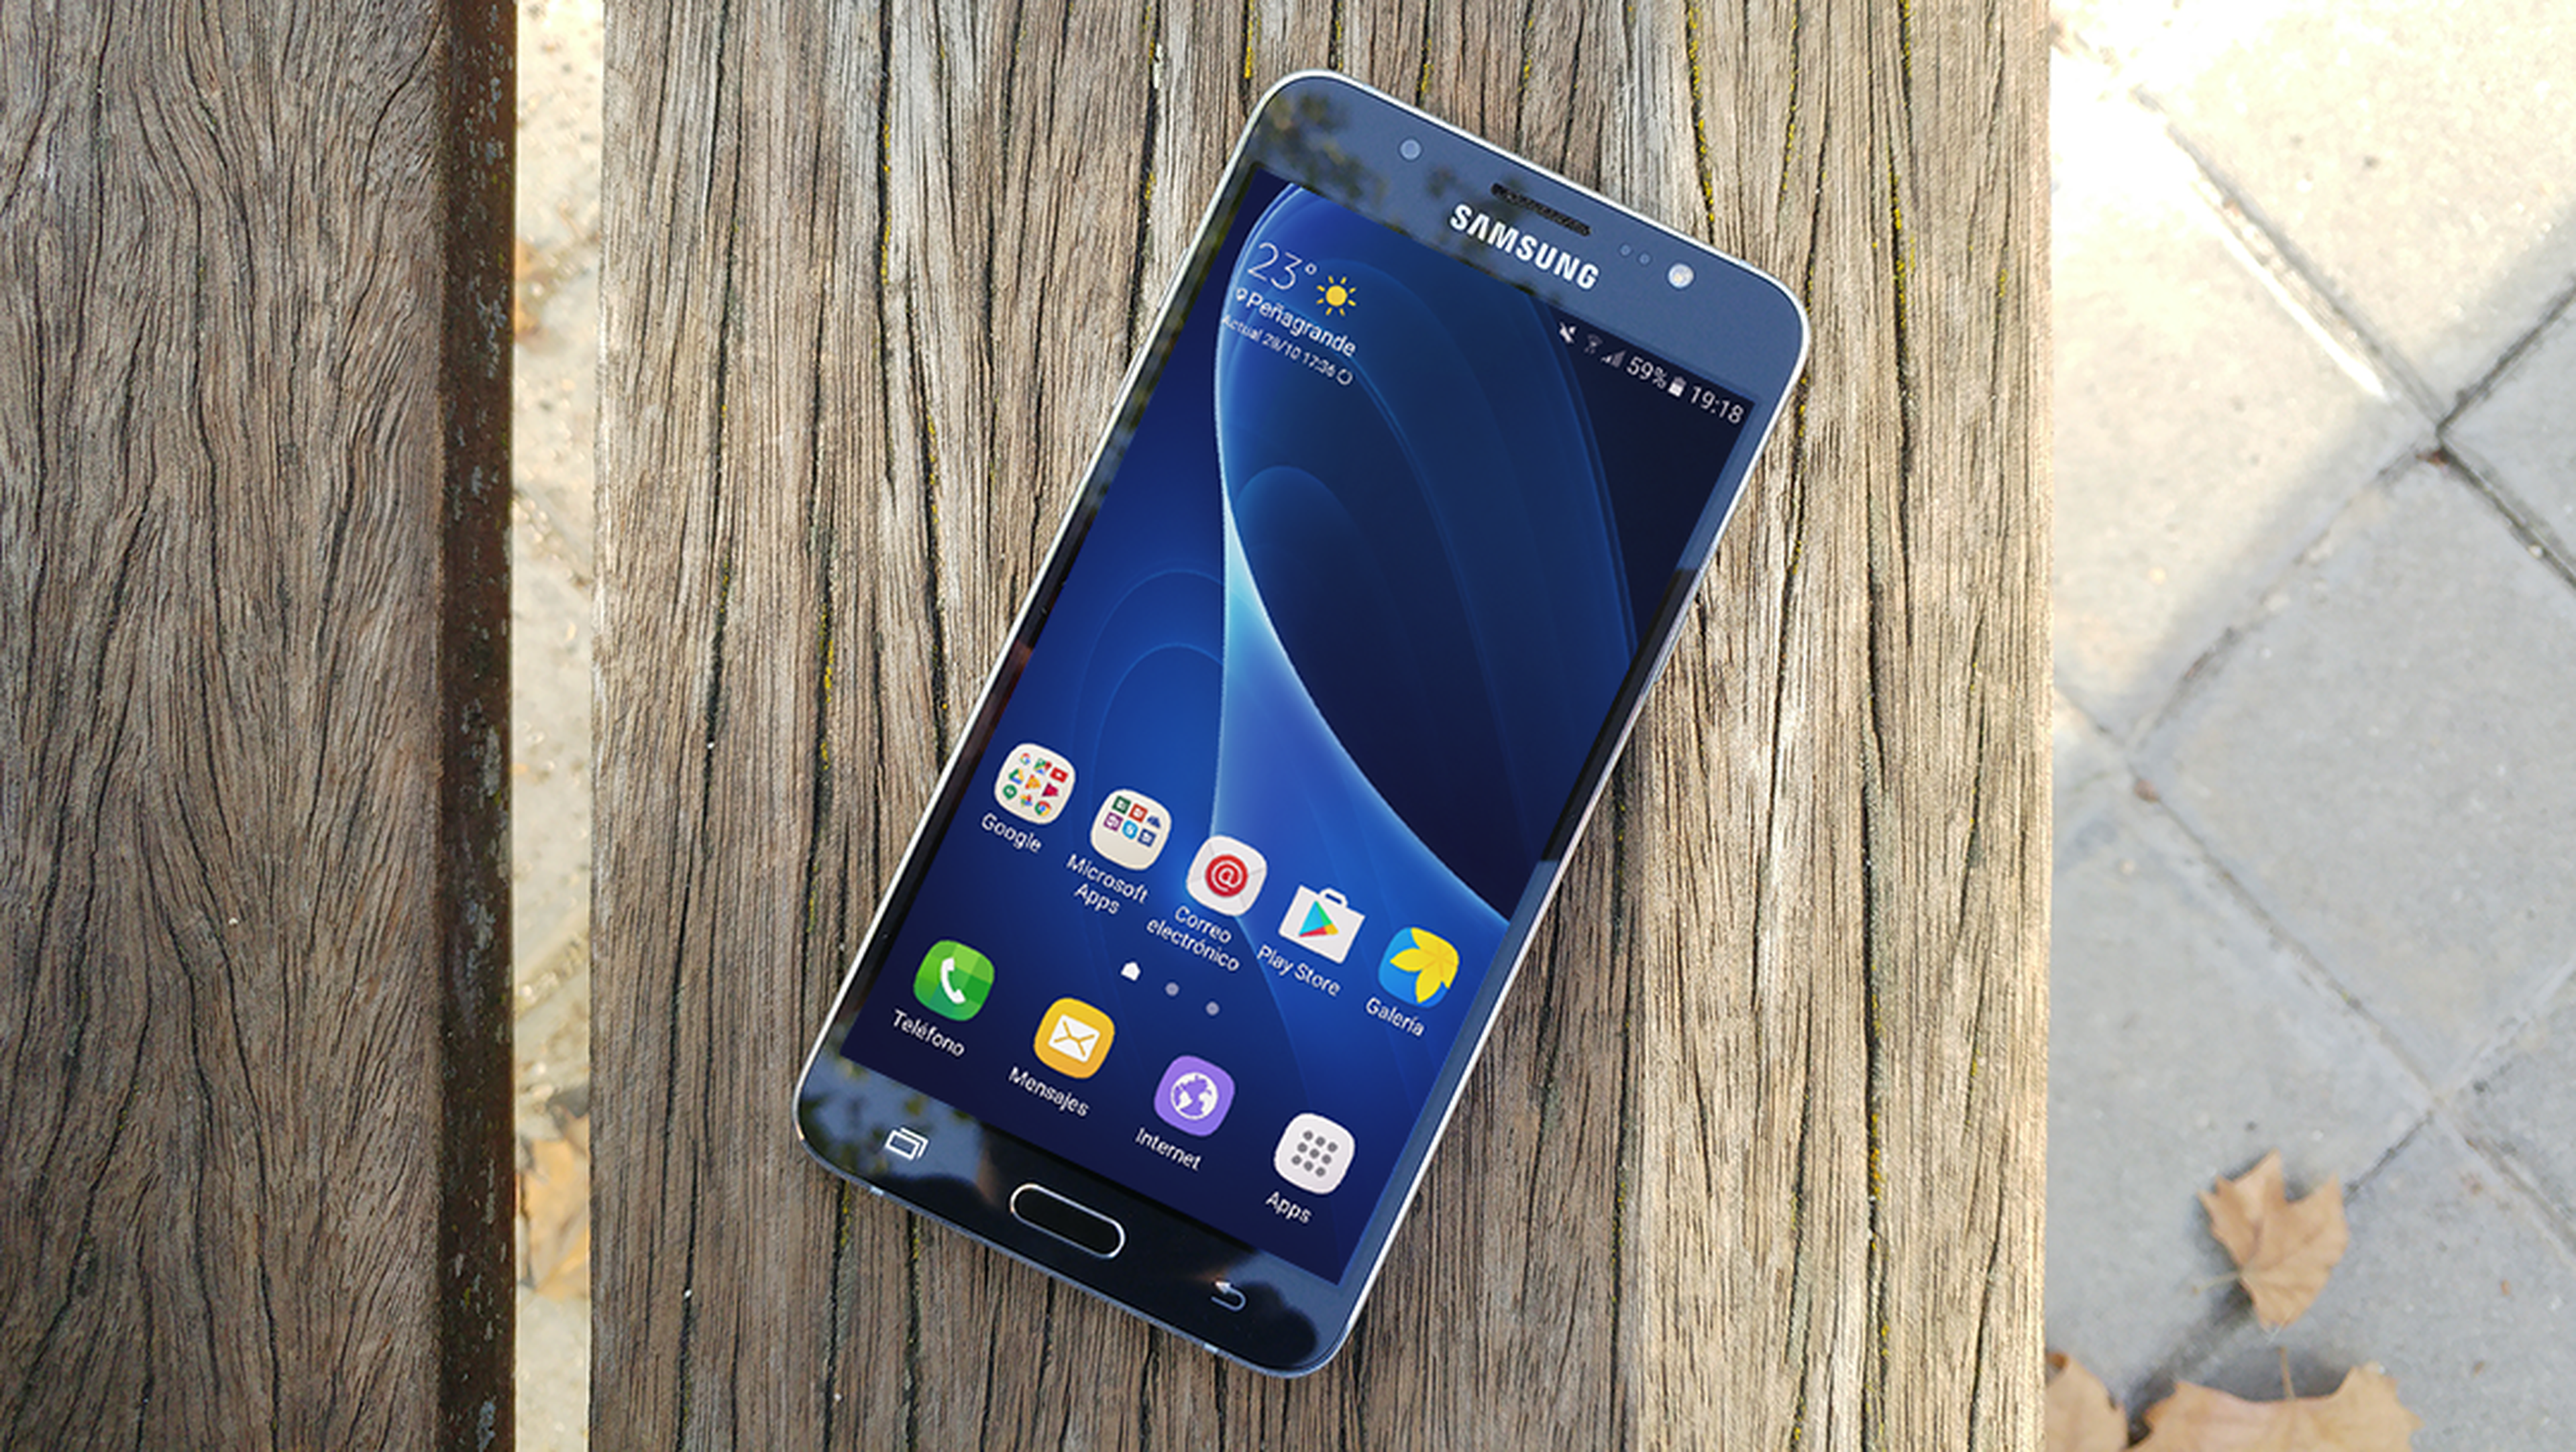 Galería de imágenes del Samsung Galaxy J7 2016